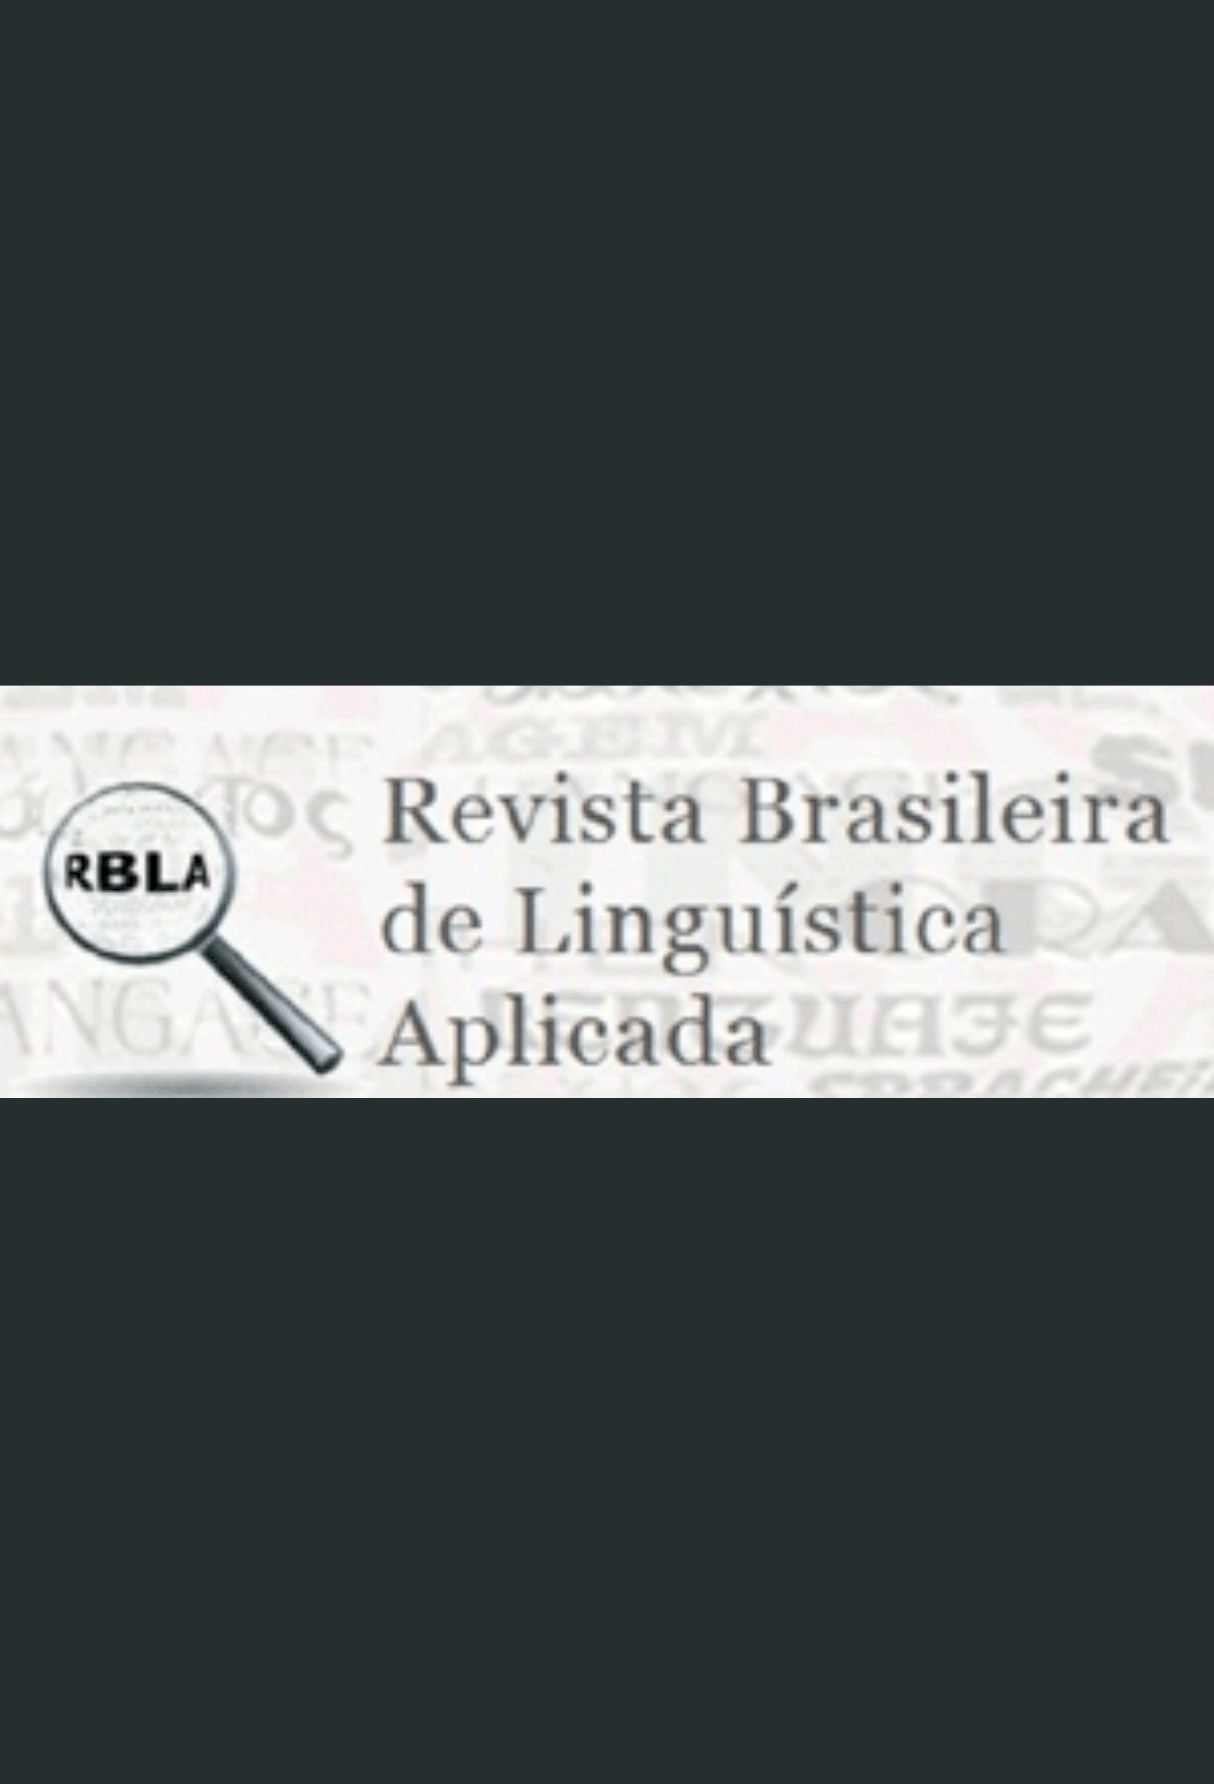 Capa: Revista Brasileira de Linguística Aplicada